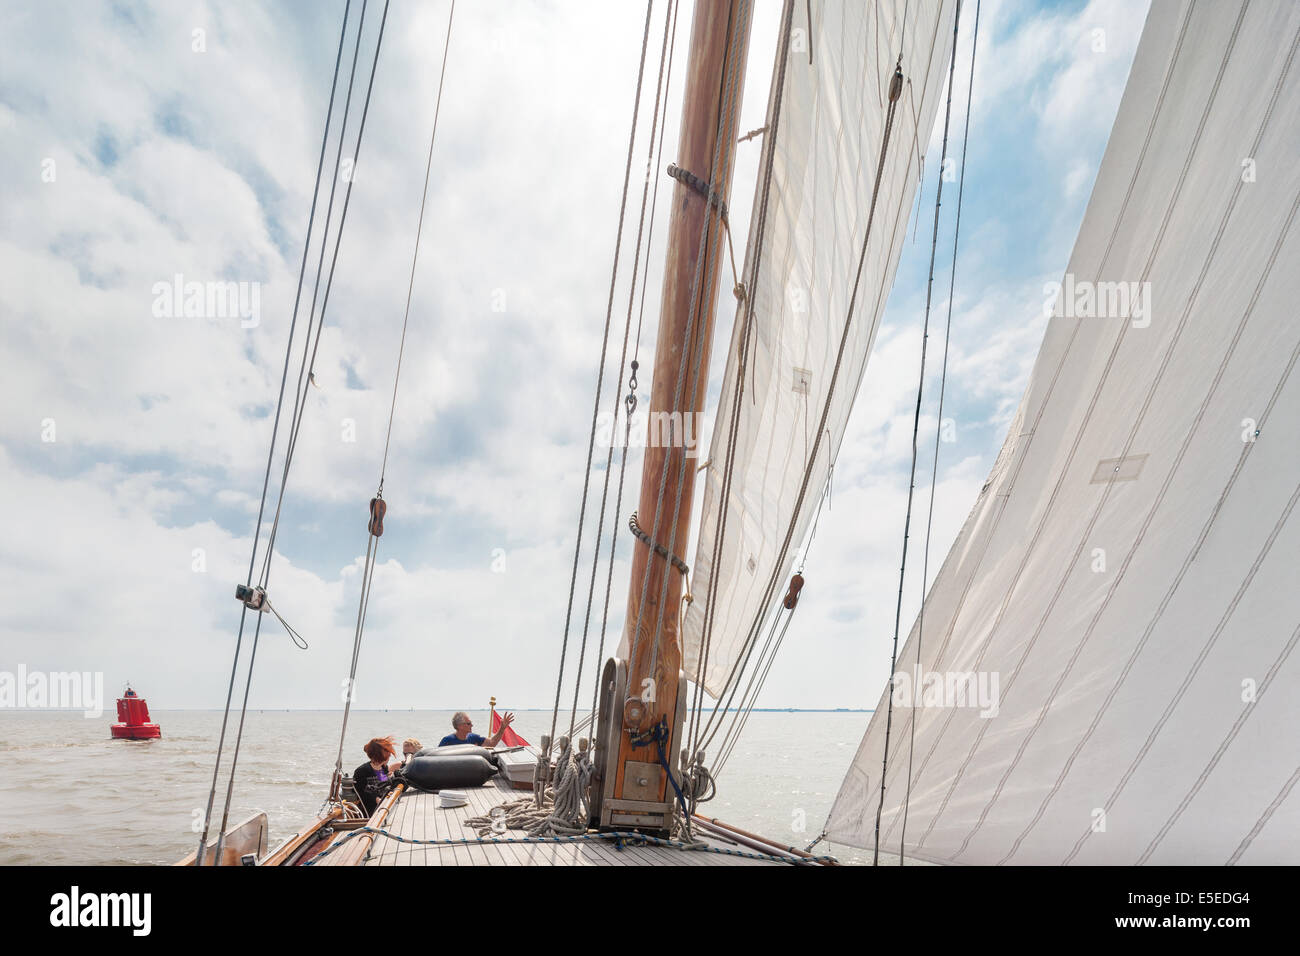 La voile sur la mer des Wadden Wadden sur un navire à voile voilier Lemsteraak traditionnels. Site du patrimoine mondial de l'Unesco des Pays-Bas Banque D'Images